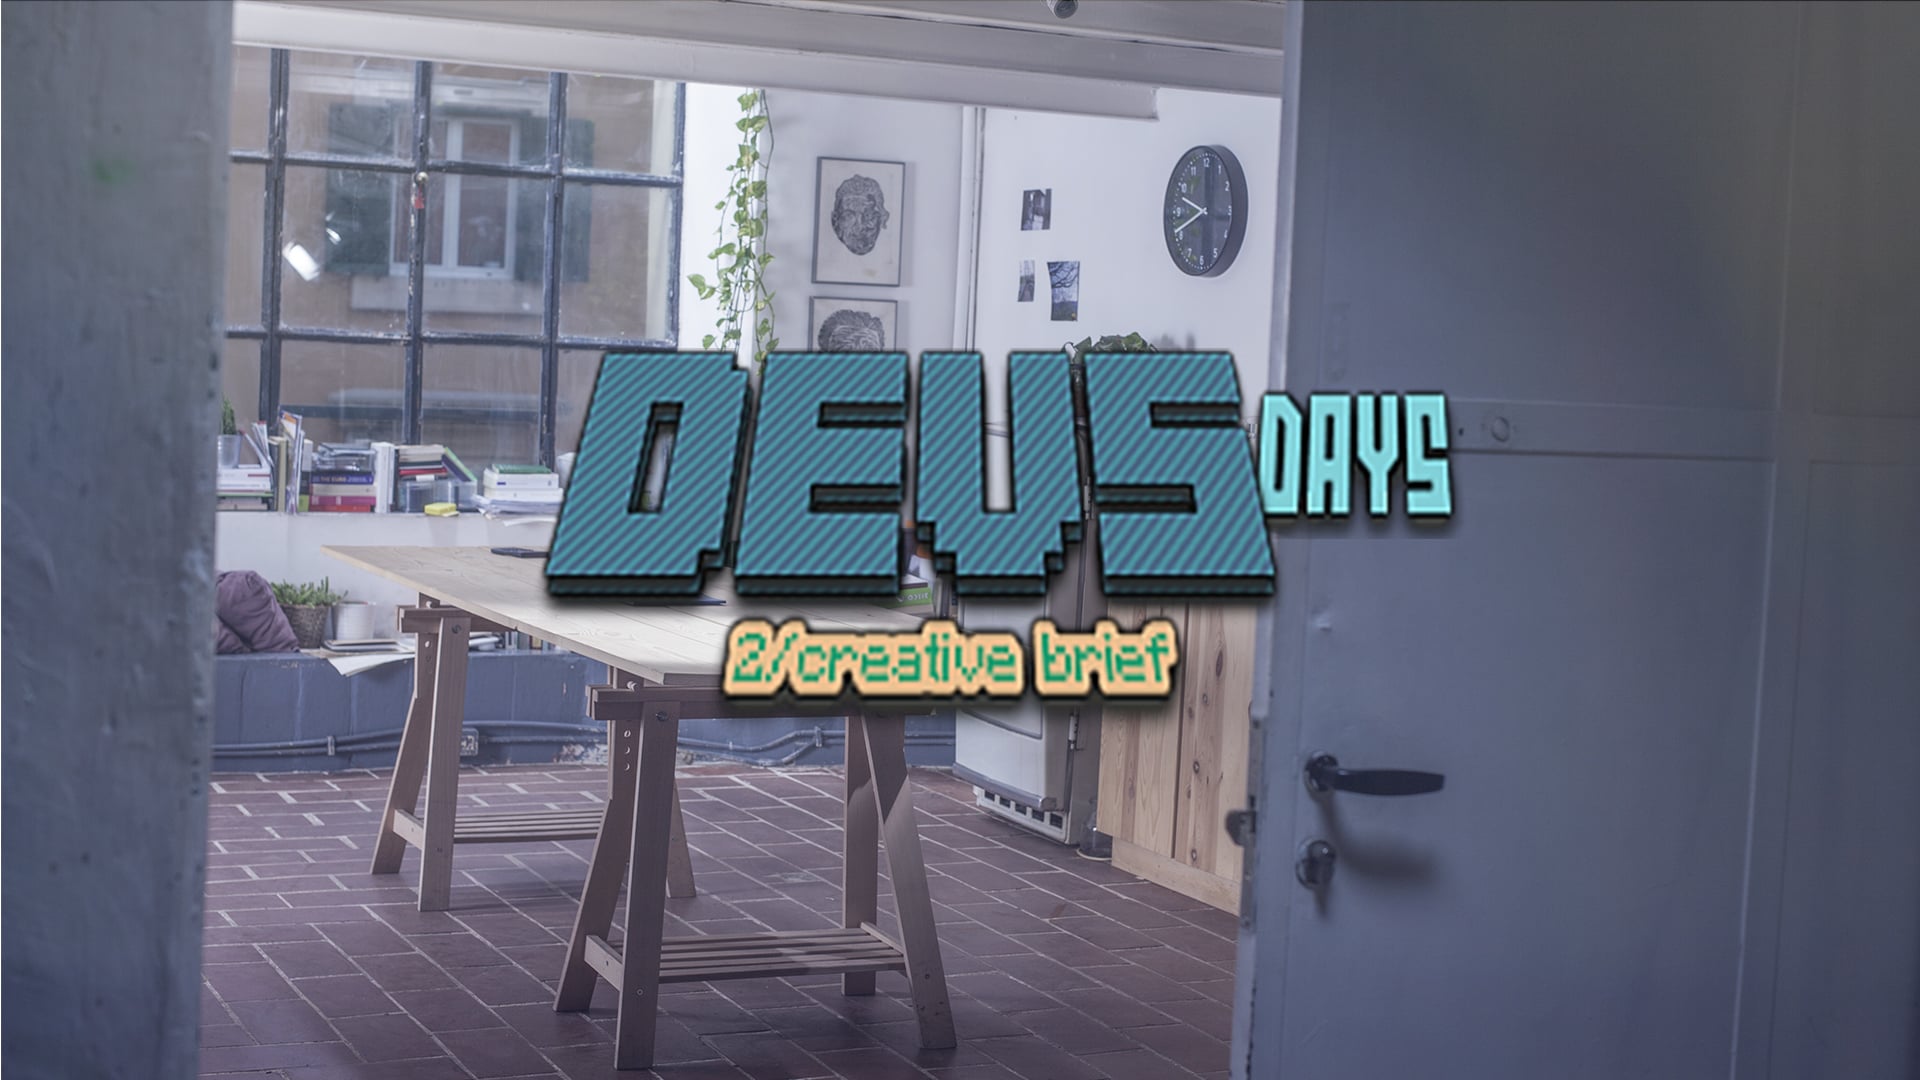 DEVS Days - 2/creative brief